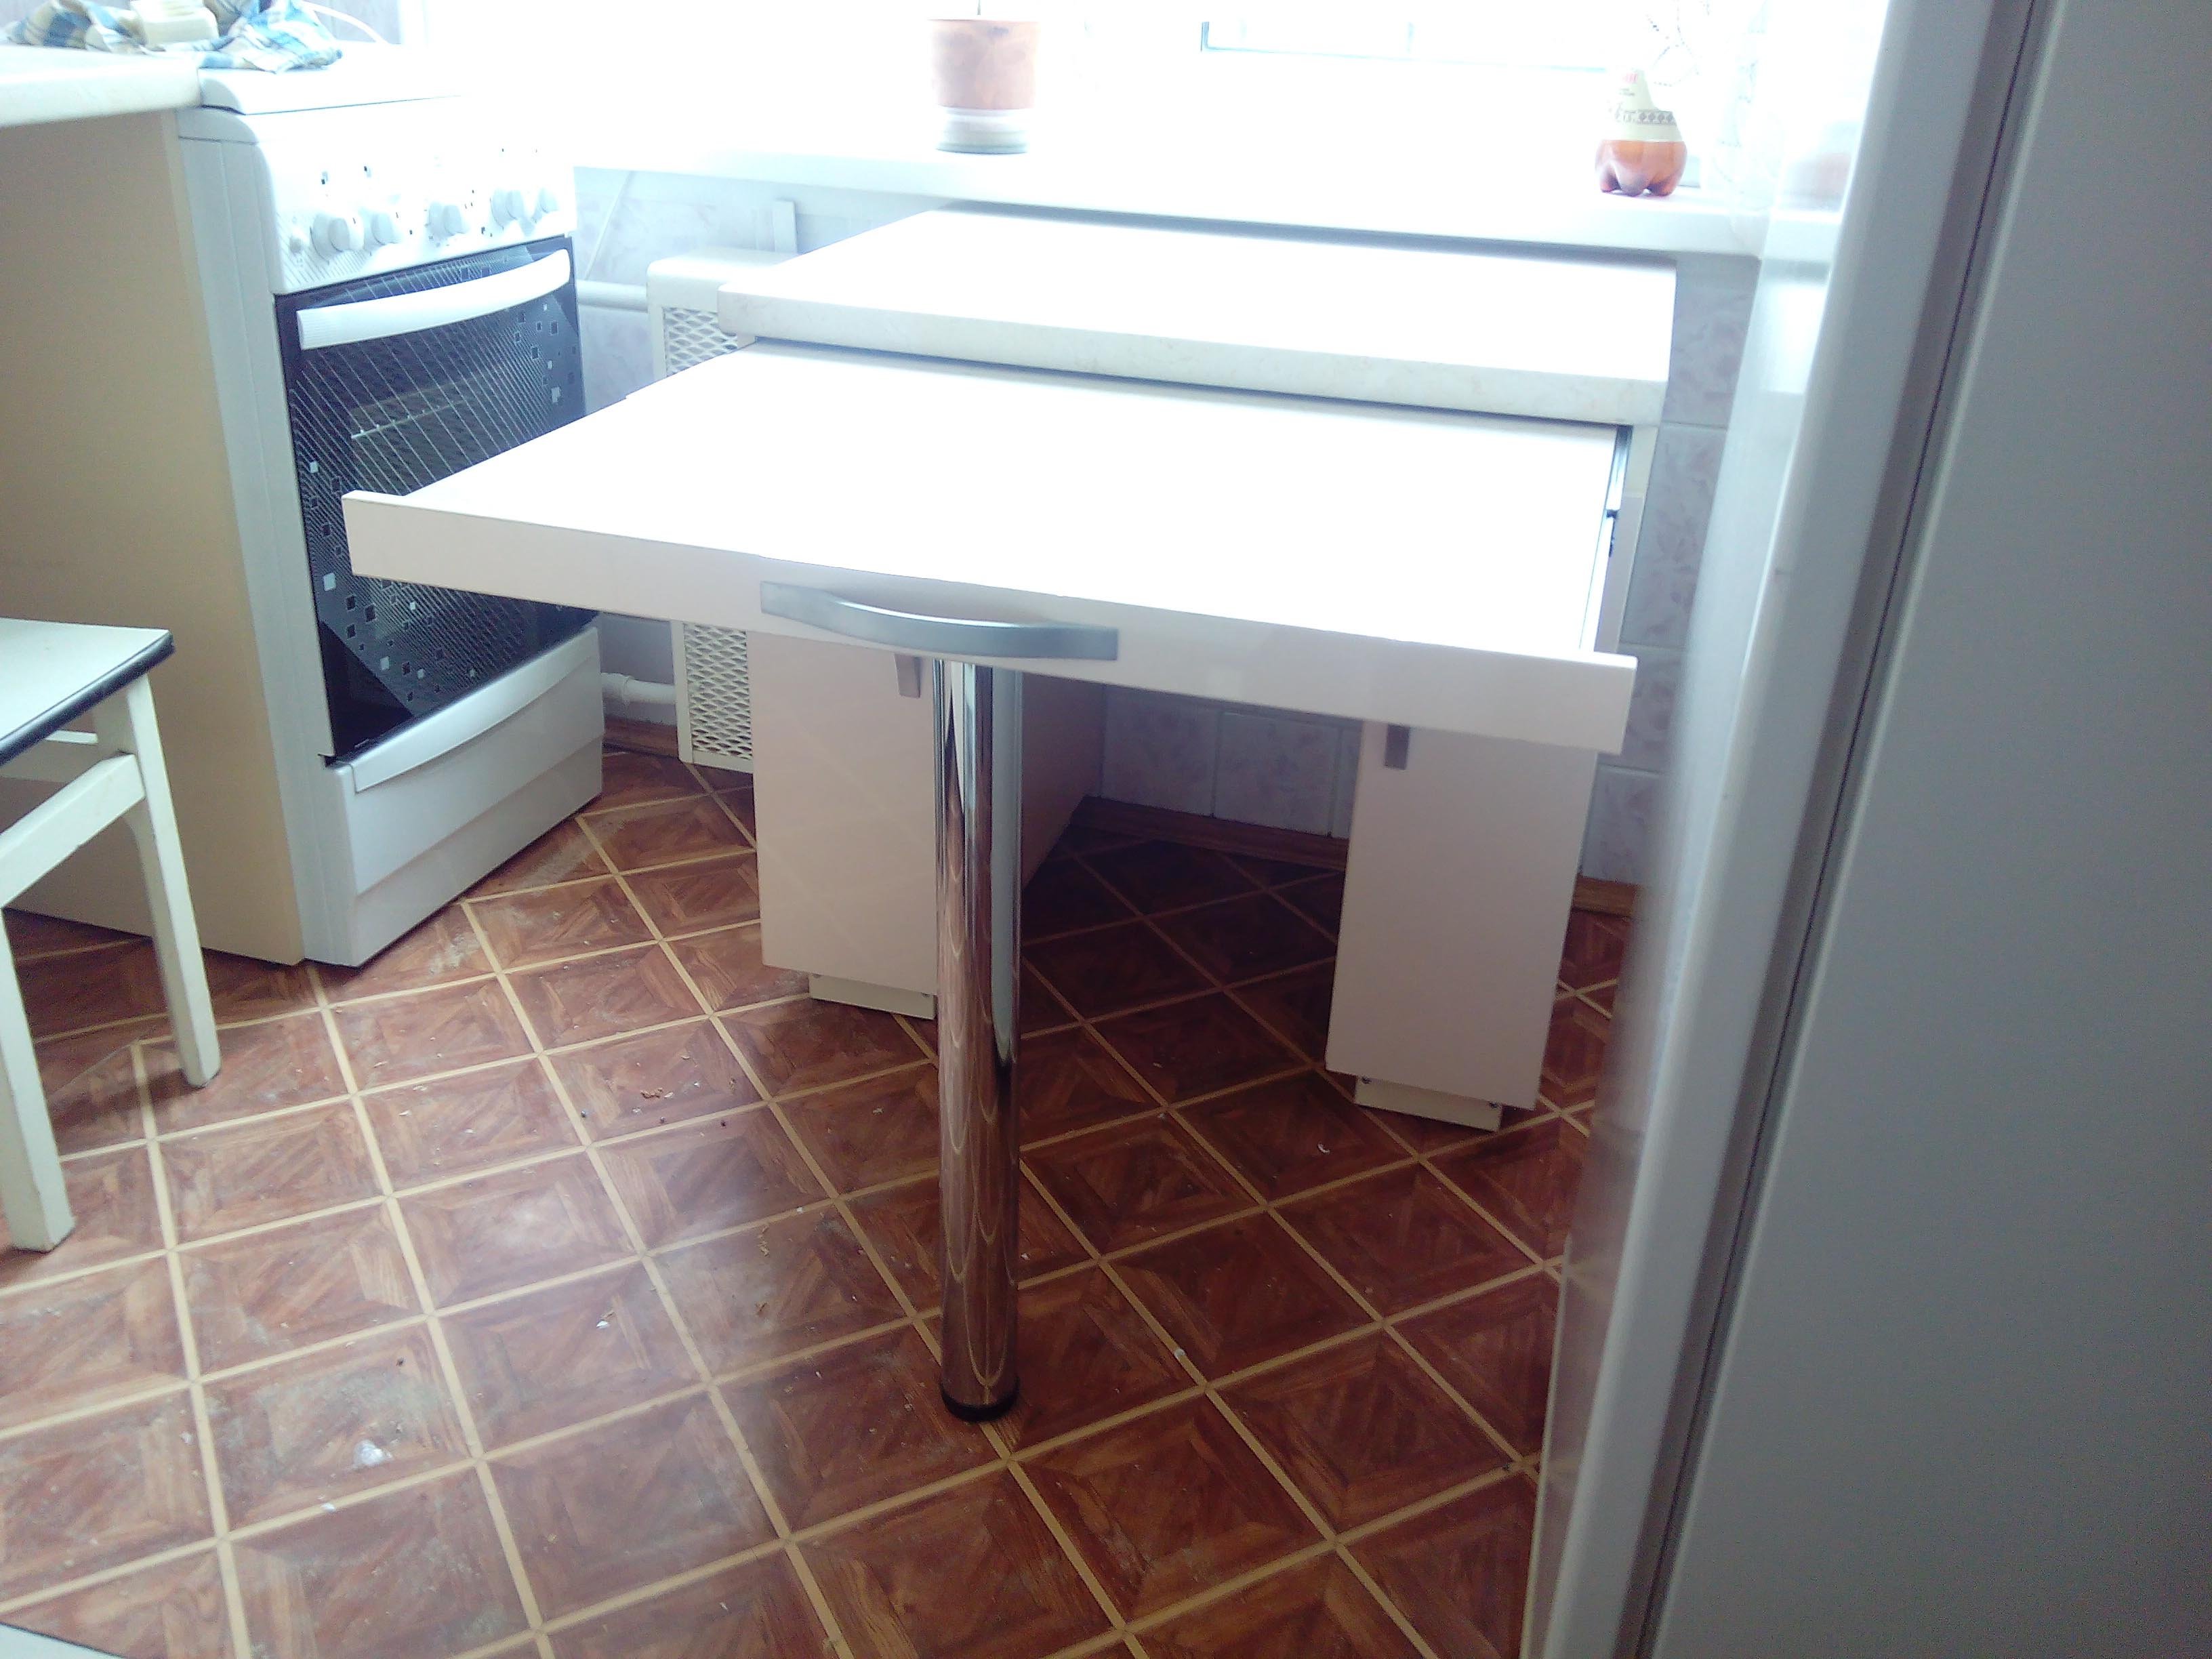 стол выкатной из столешницы на кухне